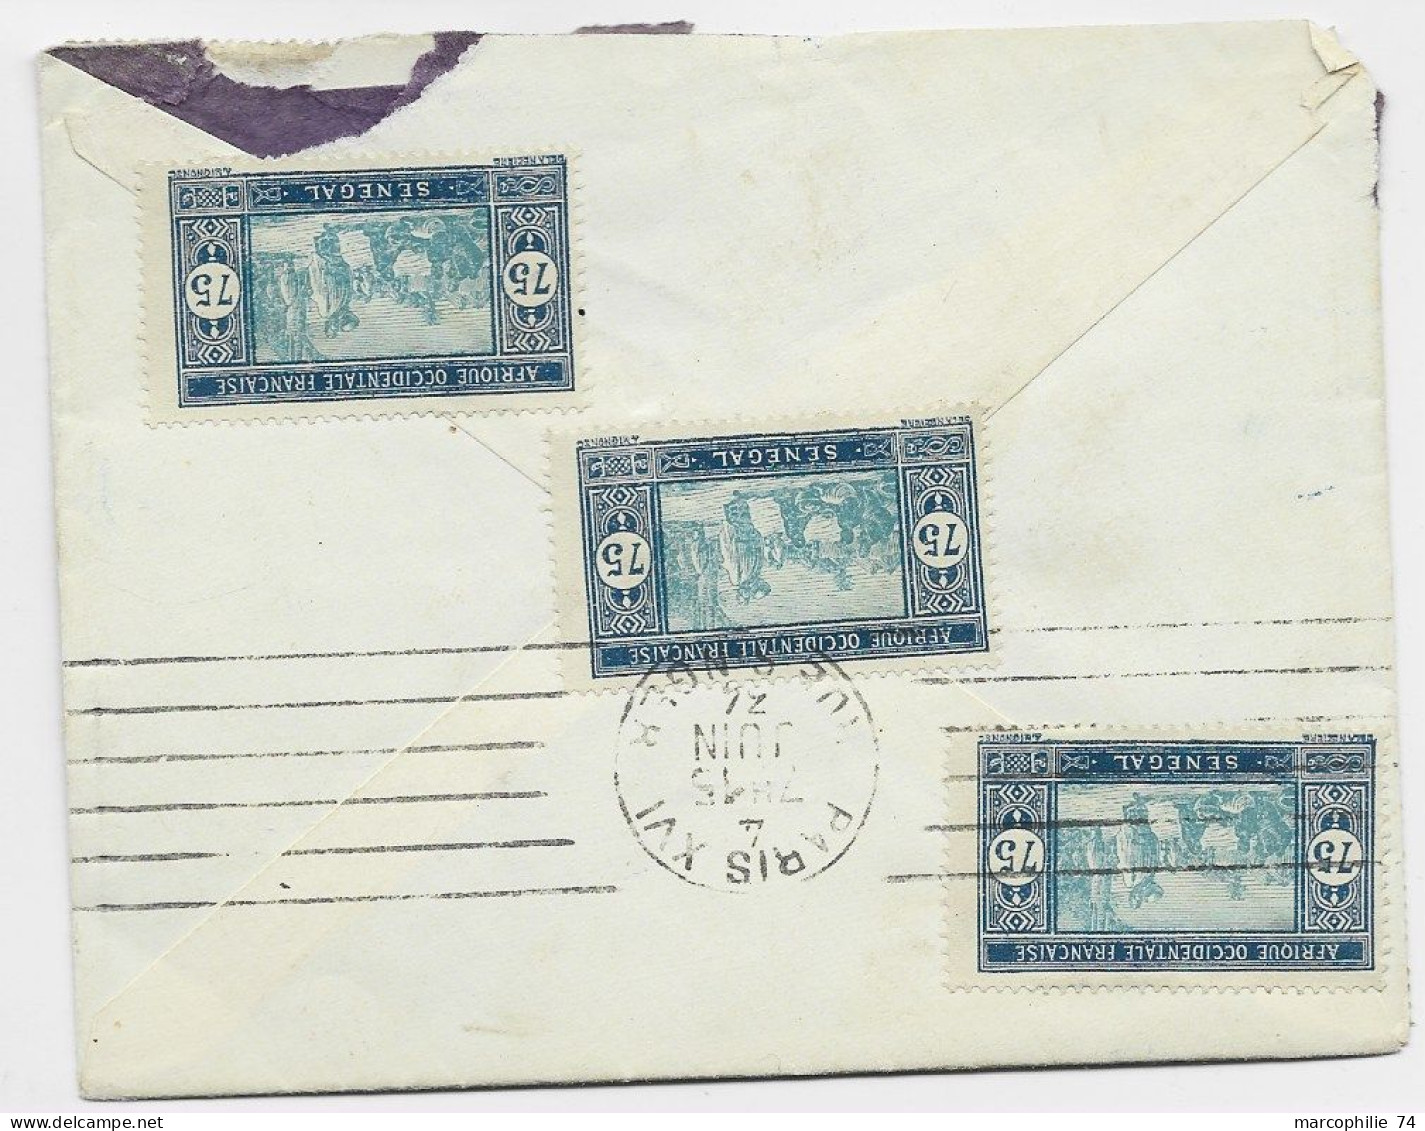 SENEGAL 45C+75C+5C LETTRE MAL OUVERTE + VERSO 75CX3 DAKAR AVION 1934 TO FRANCE - Lettres & Documents